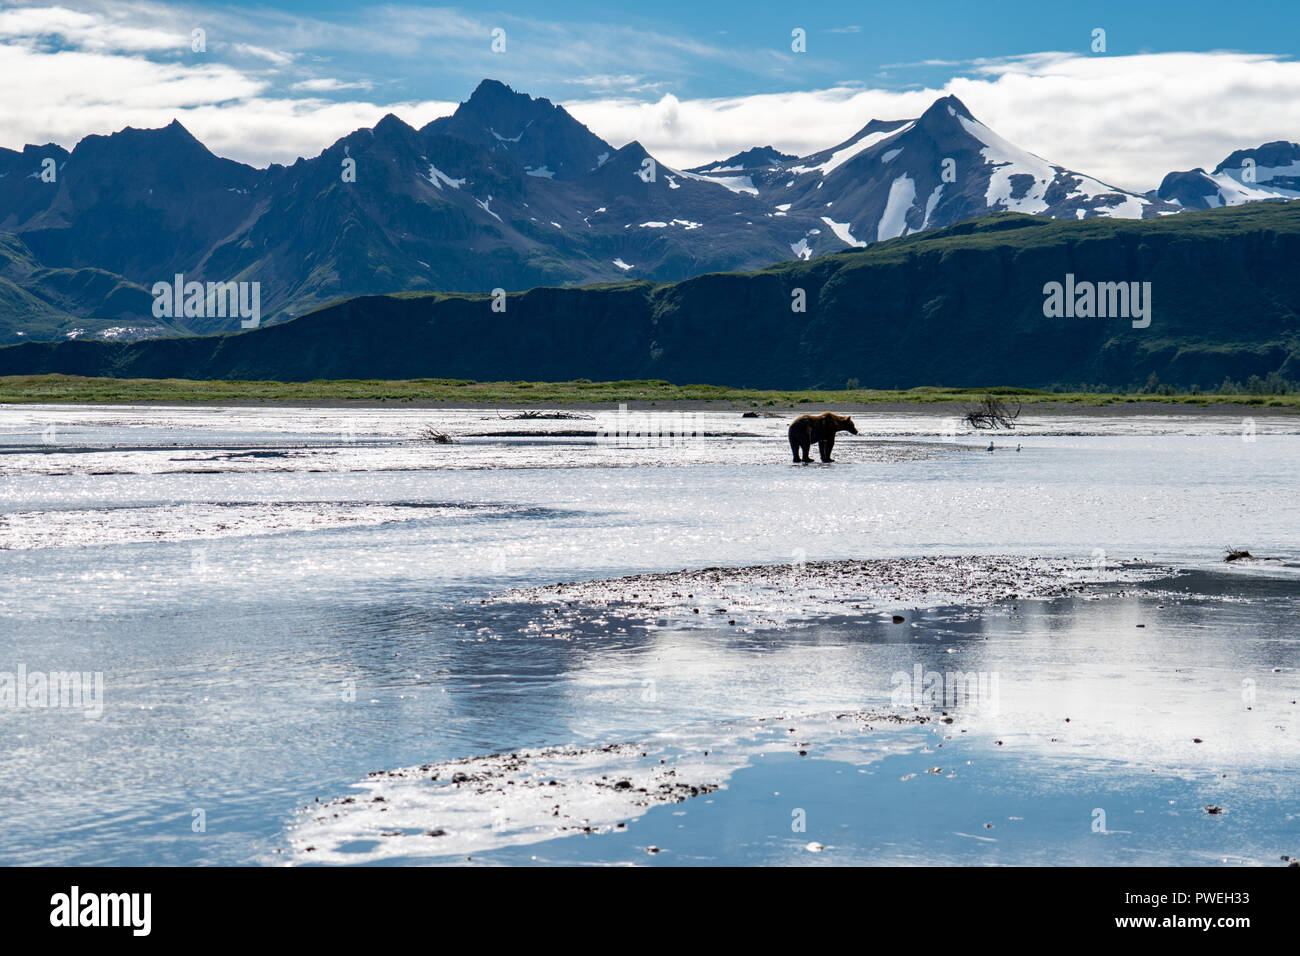 De pêche du saumon de l'ours grizzli dans le beau paysage de parc national de Katmai en Alaska, entouré de montagnes et d'une rivière Banque D'Images